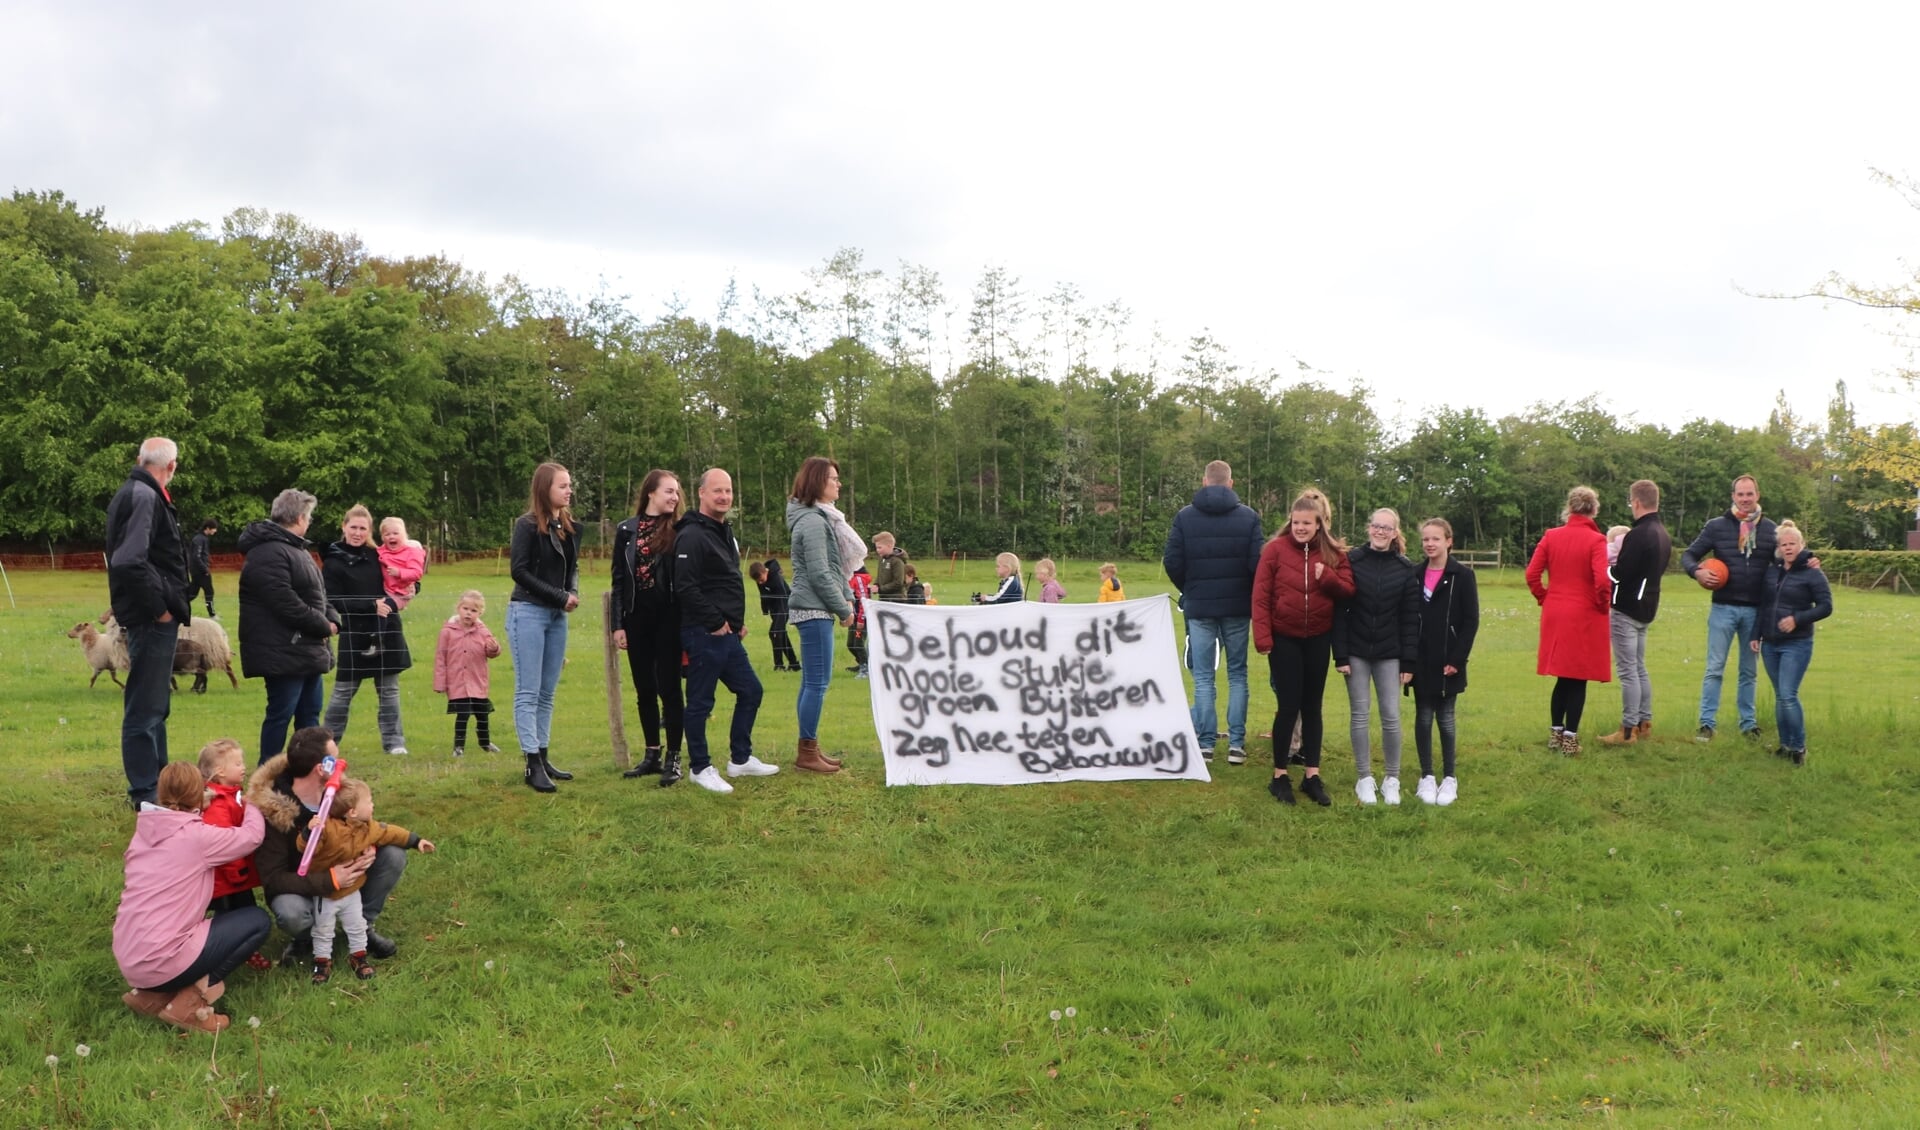 De omwonenden van de Huybertsenweg zijn een petitie gestart tegen de bouw van flexwoningen op de schapenweide.